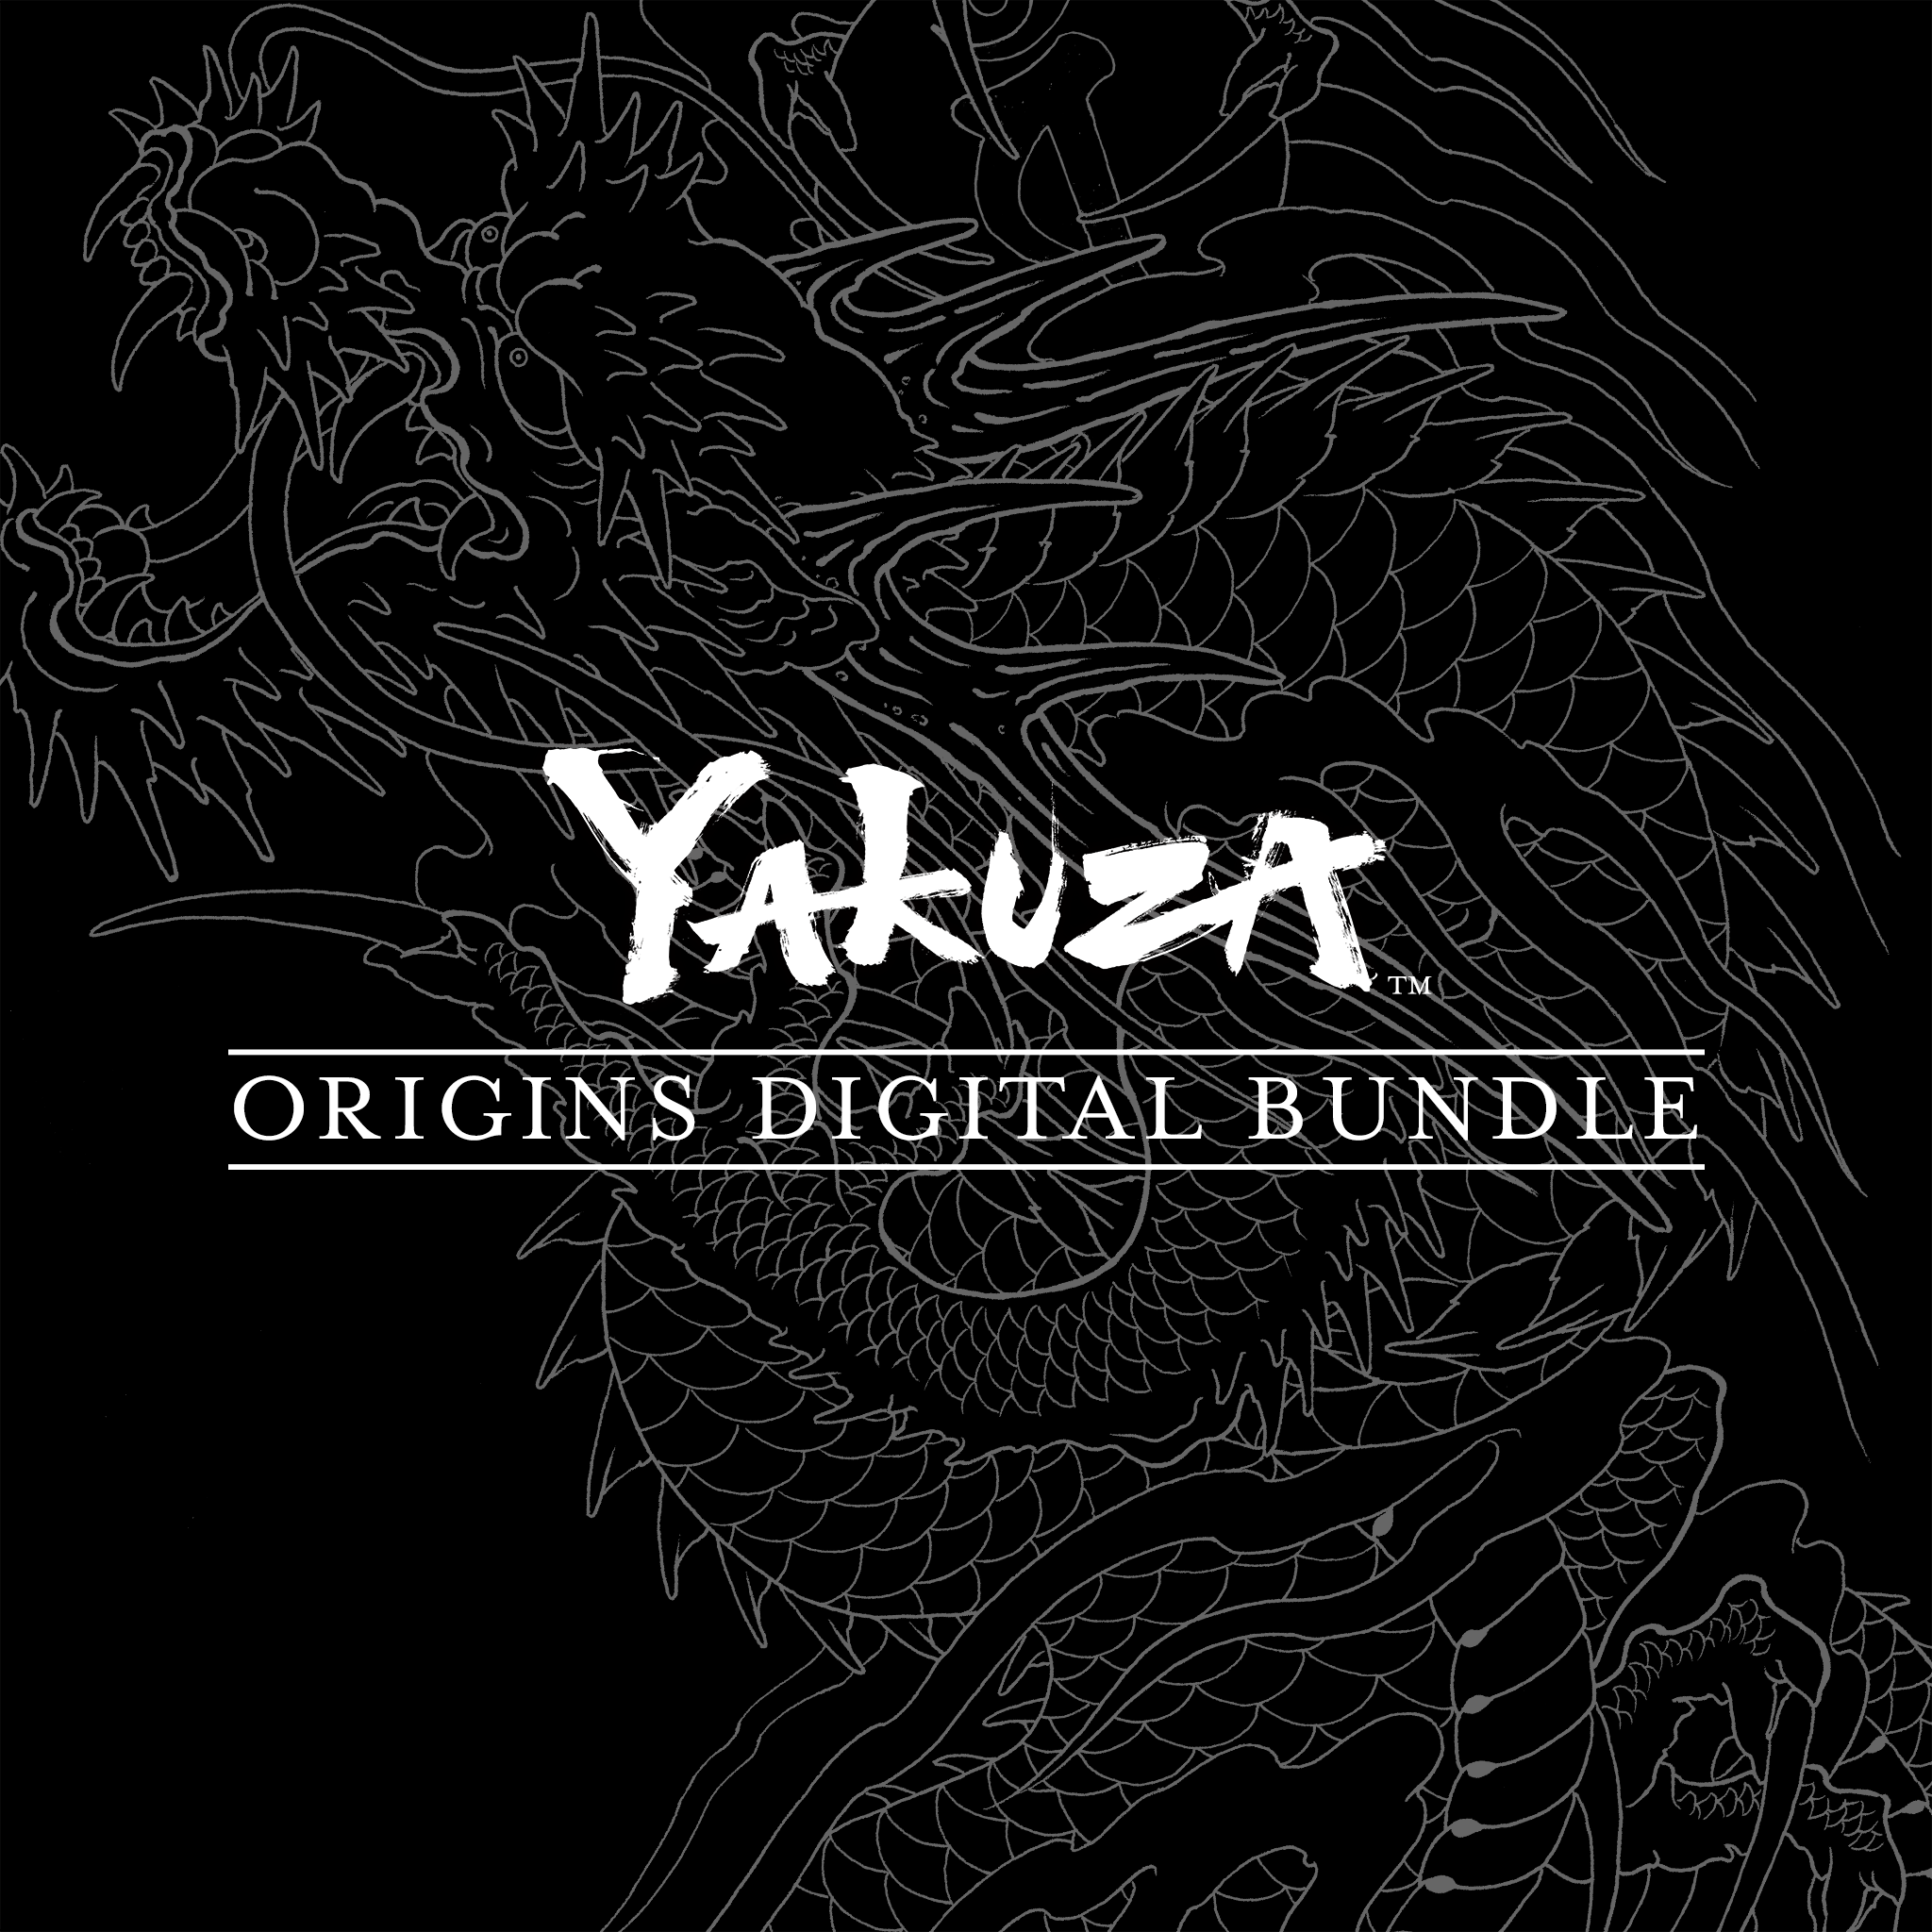 The Yakuza Origins Digital Bundle